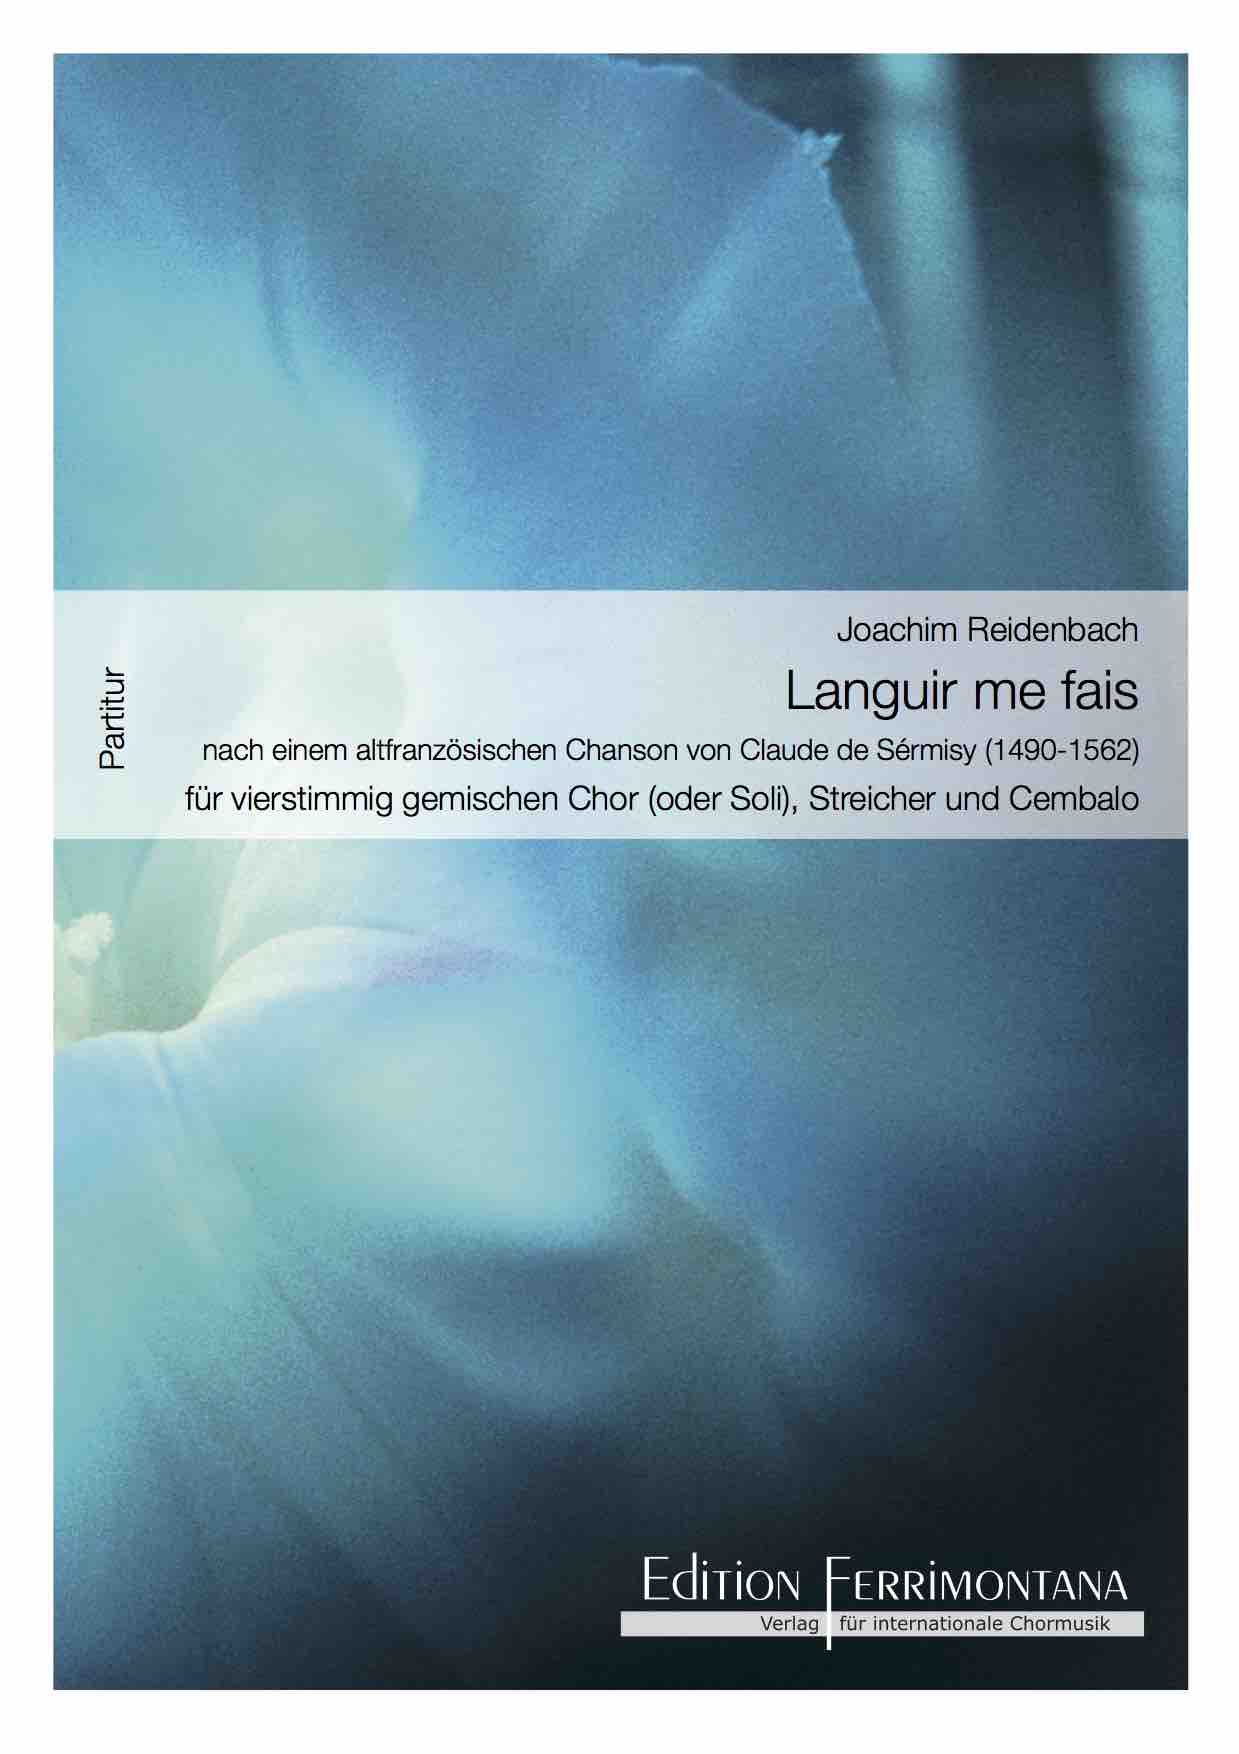 Reidenbach: Languir me fais, Bearbeitung für vierstimmig gemischten Chor oder Soli, Streicher und Cembalo, nach einem altfranzösischen Chanson von Sérmisy - Partitur